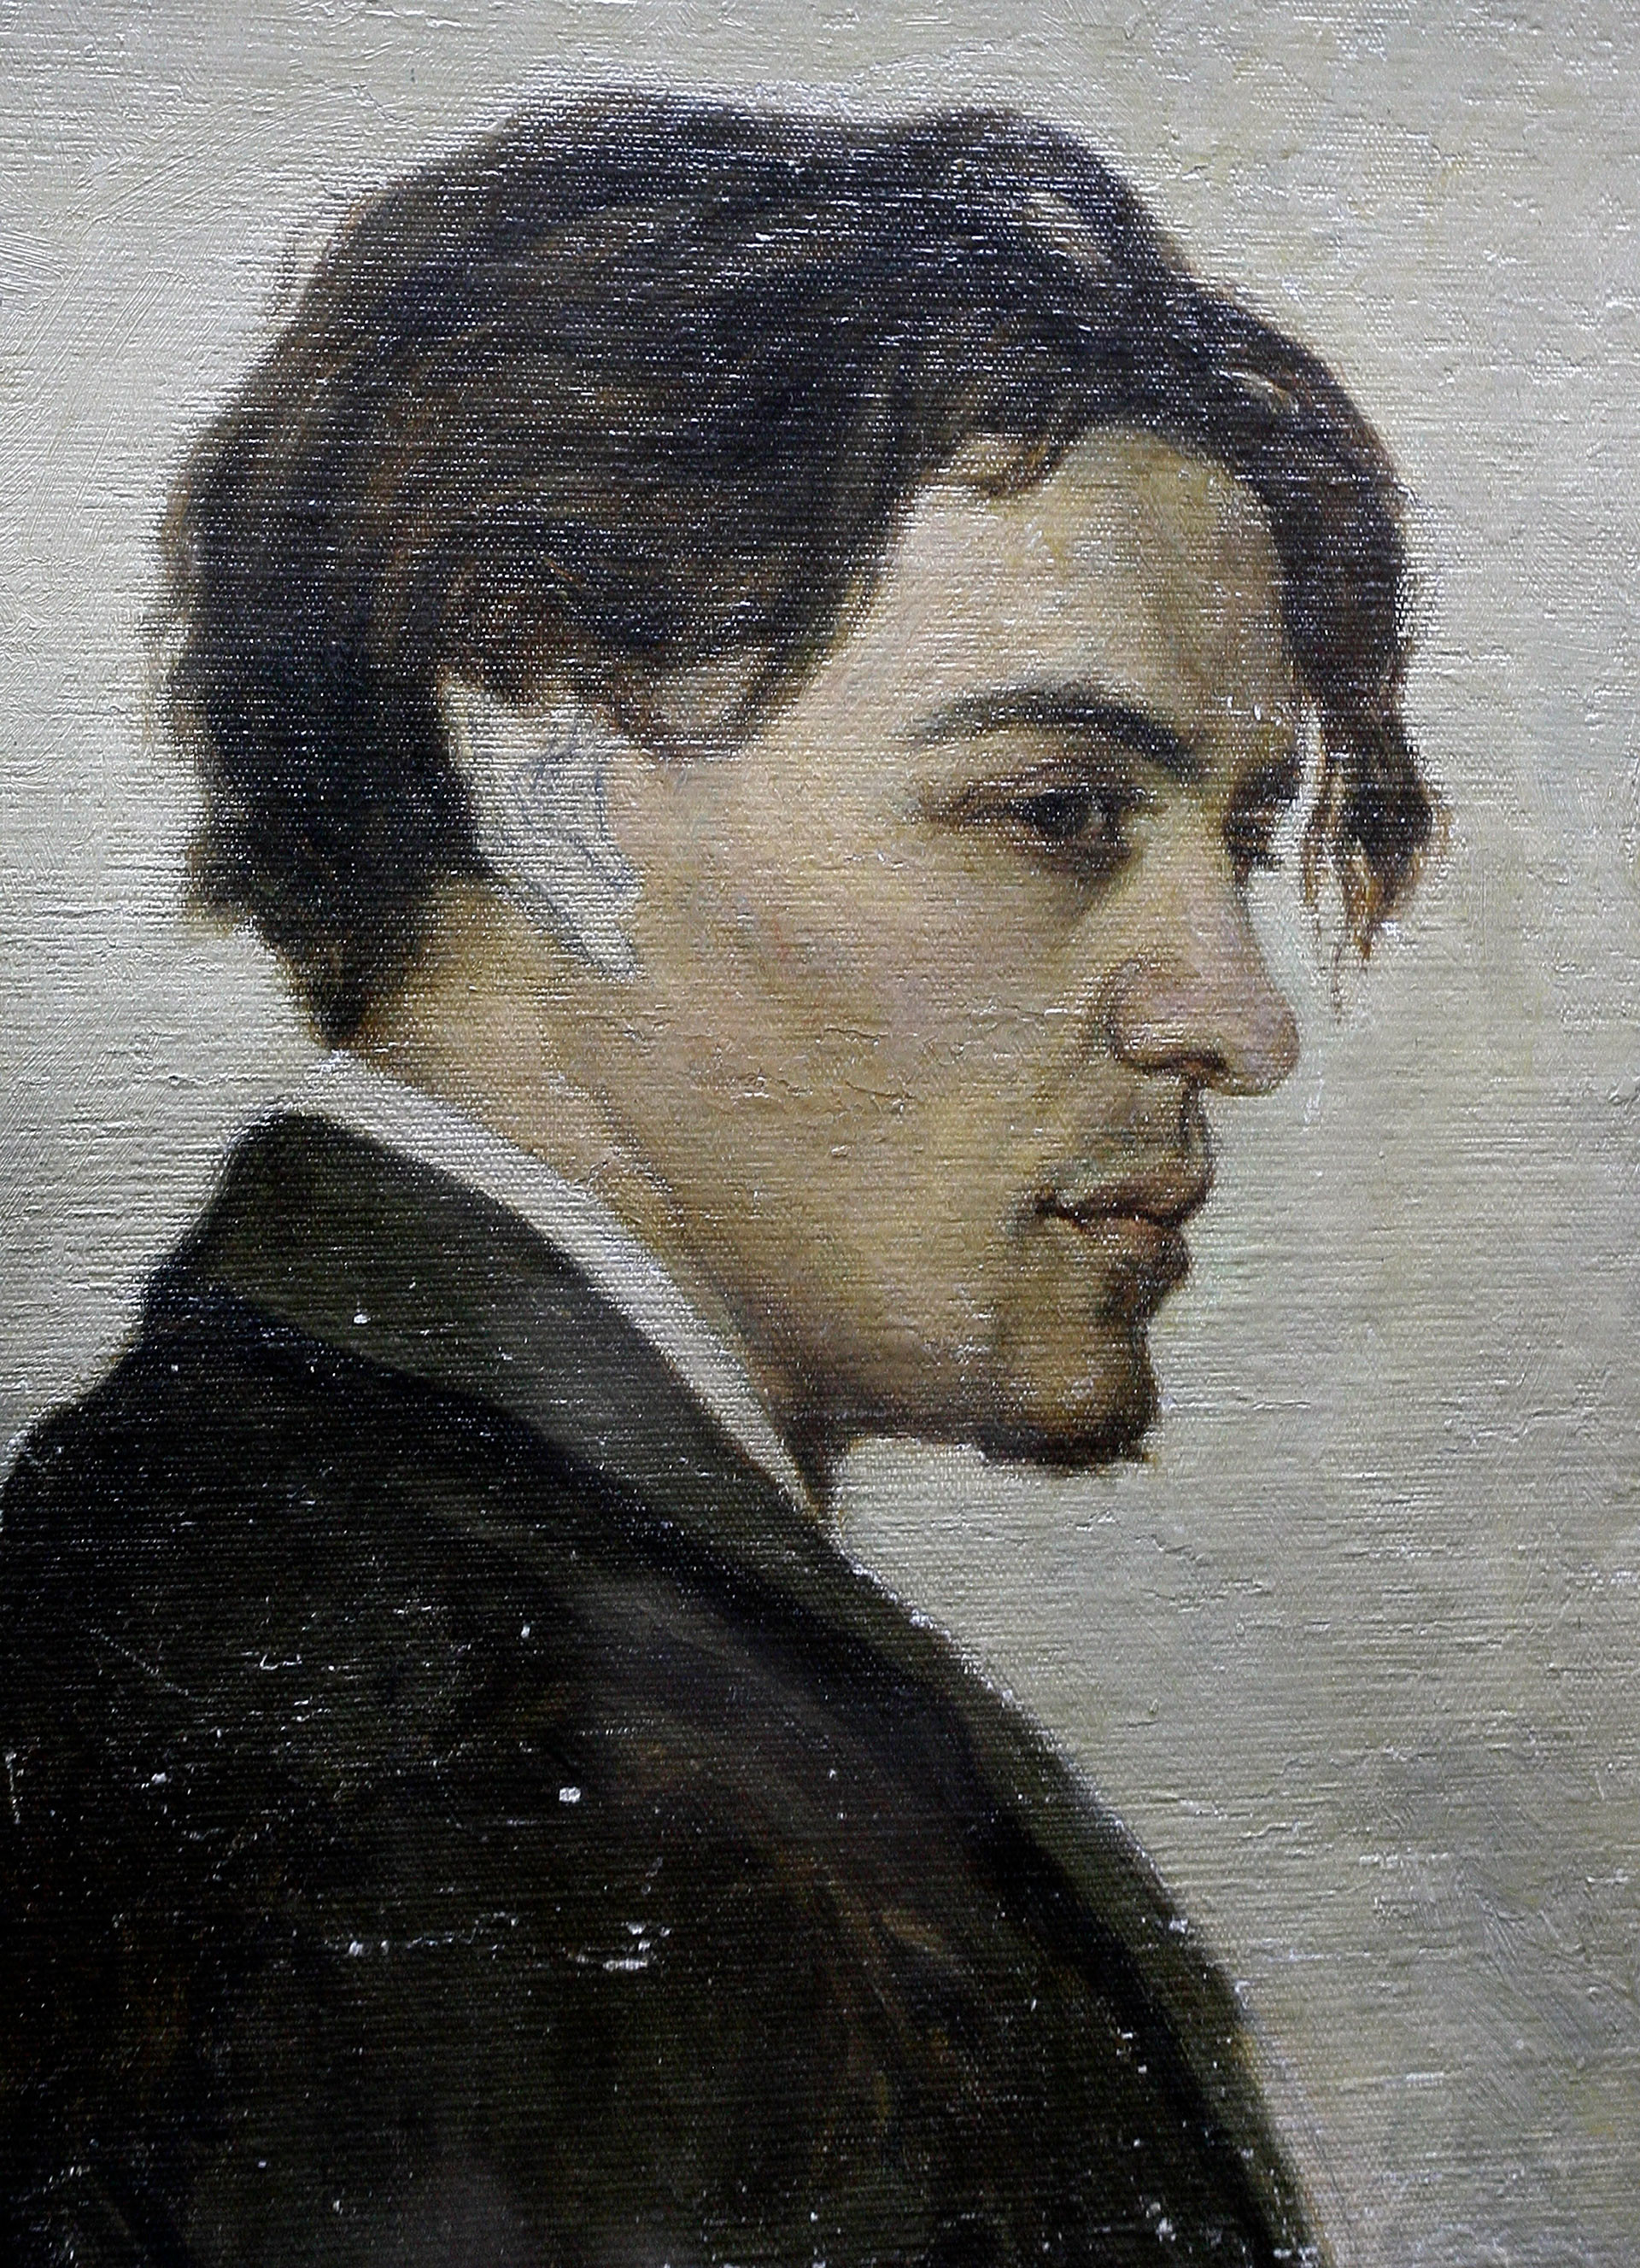 Diese Porträt von Tschechows Künstlerbruder Nikolaj hängt heute im Tschechow-Literatur-Museum in Tschechows altem Gymnasium.